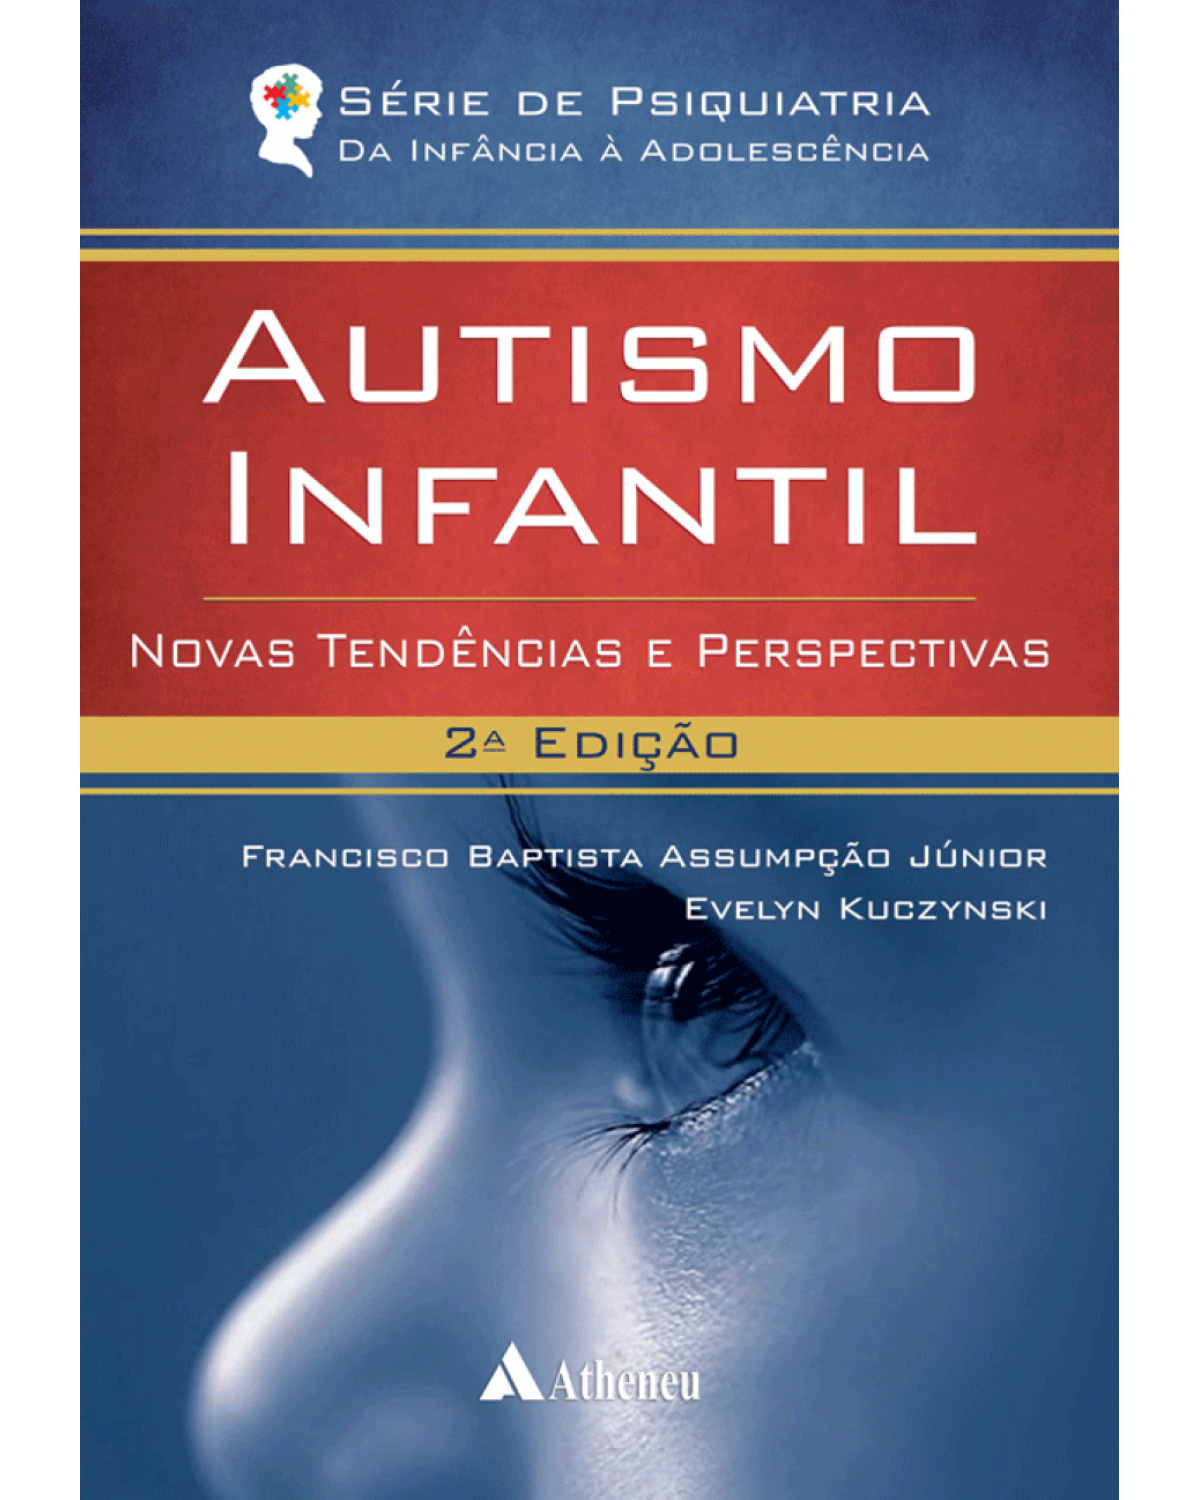 Autismo infantil - novas tendências e perspectivas - 2ª Edição | 2015